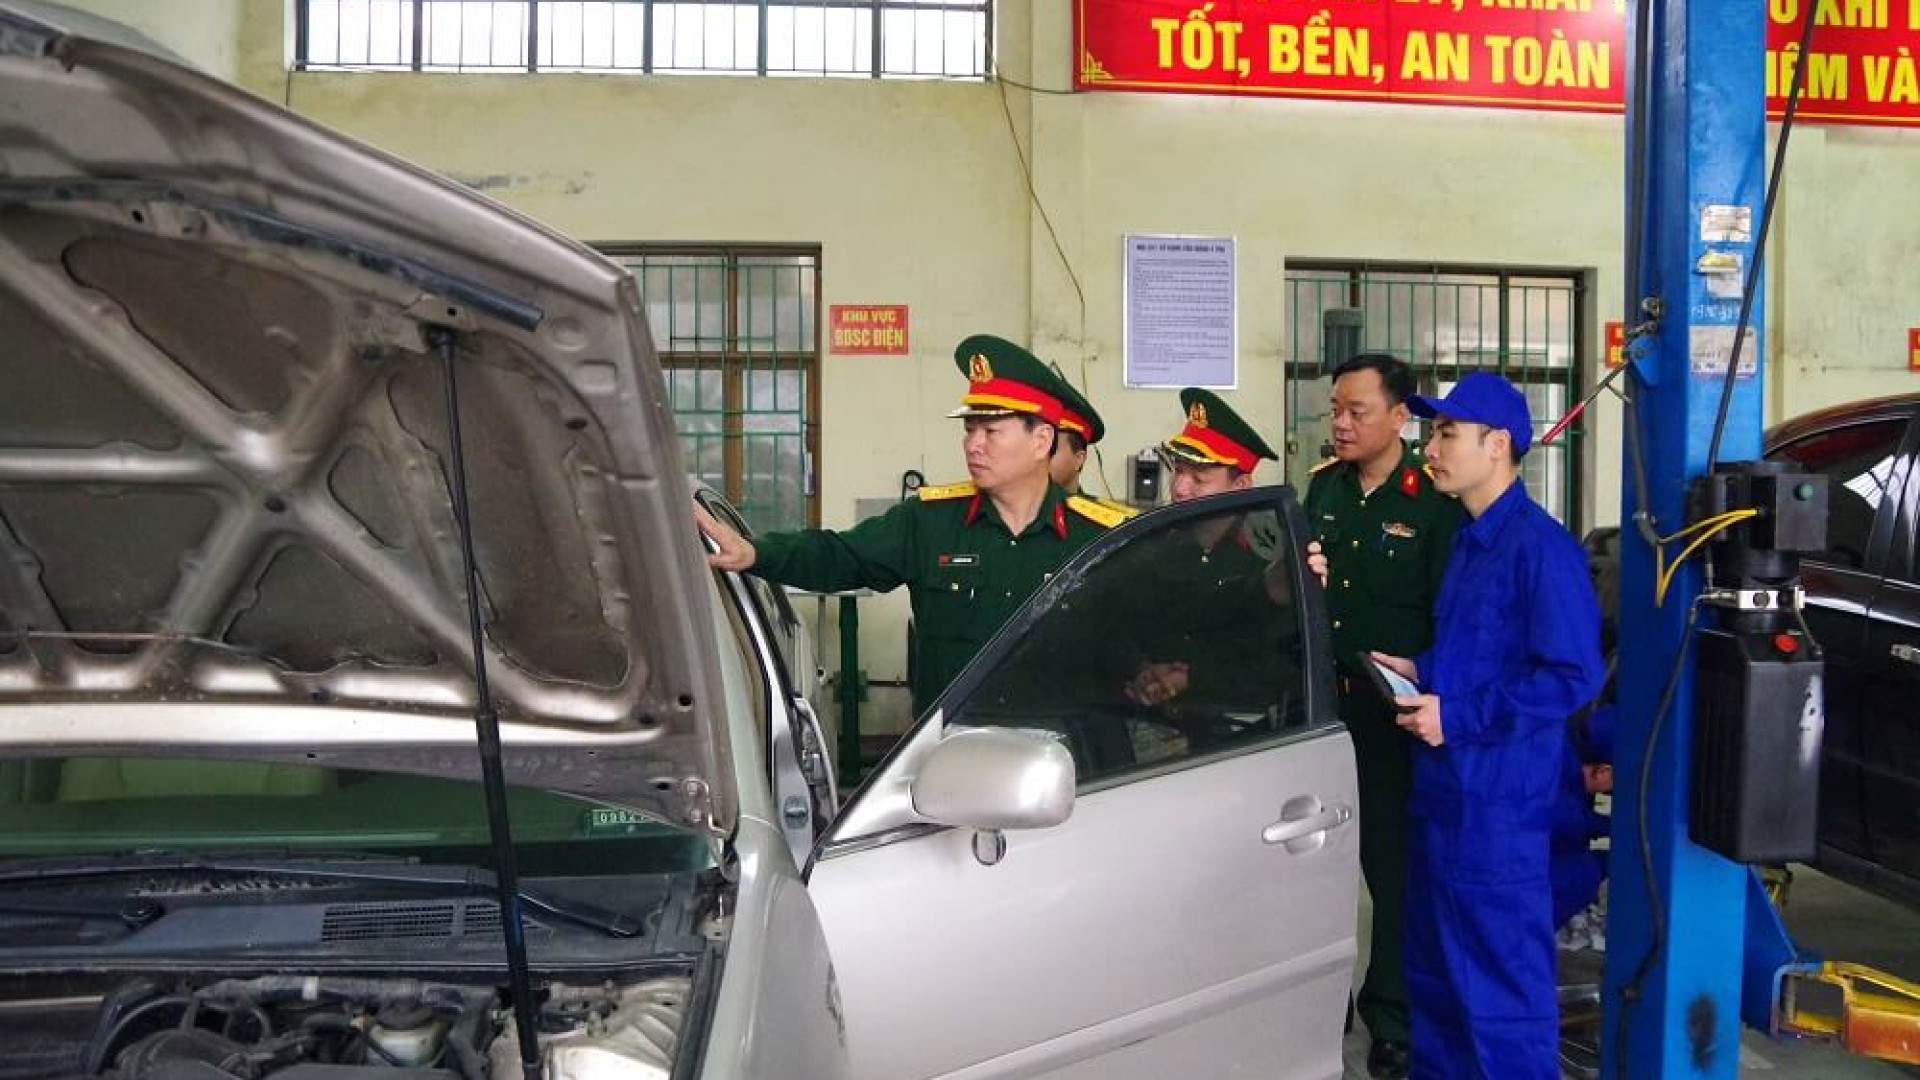 Giao nhiệm vụ cho Bộ CHQS tỉnh Thái Bình sửa chữa, đồng bộ xe - máy